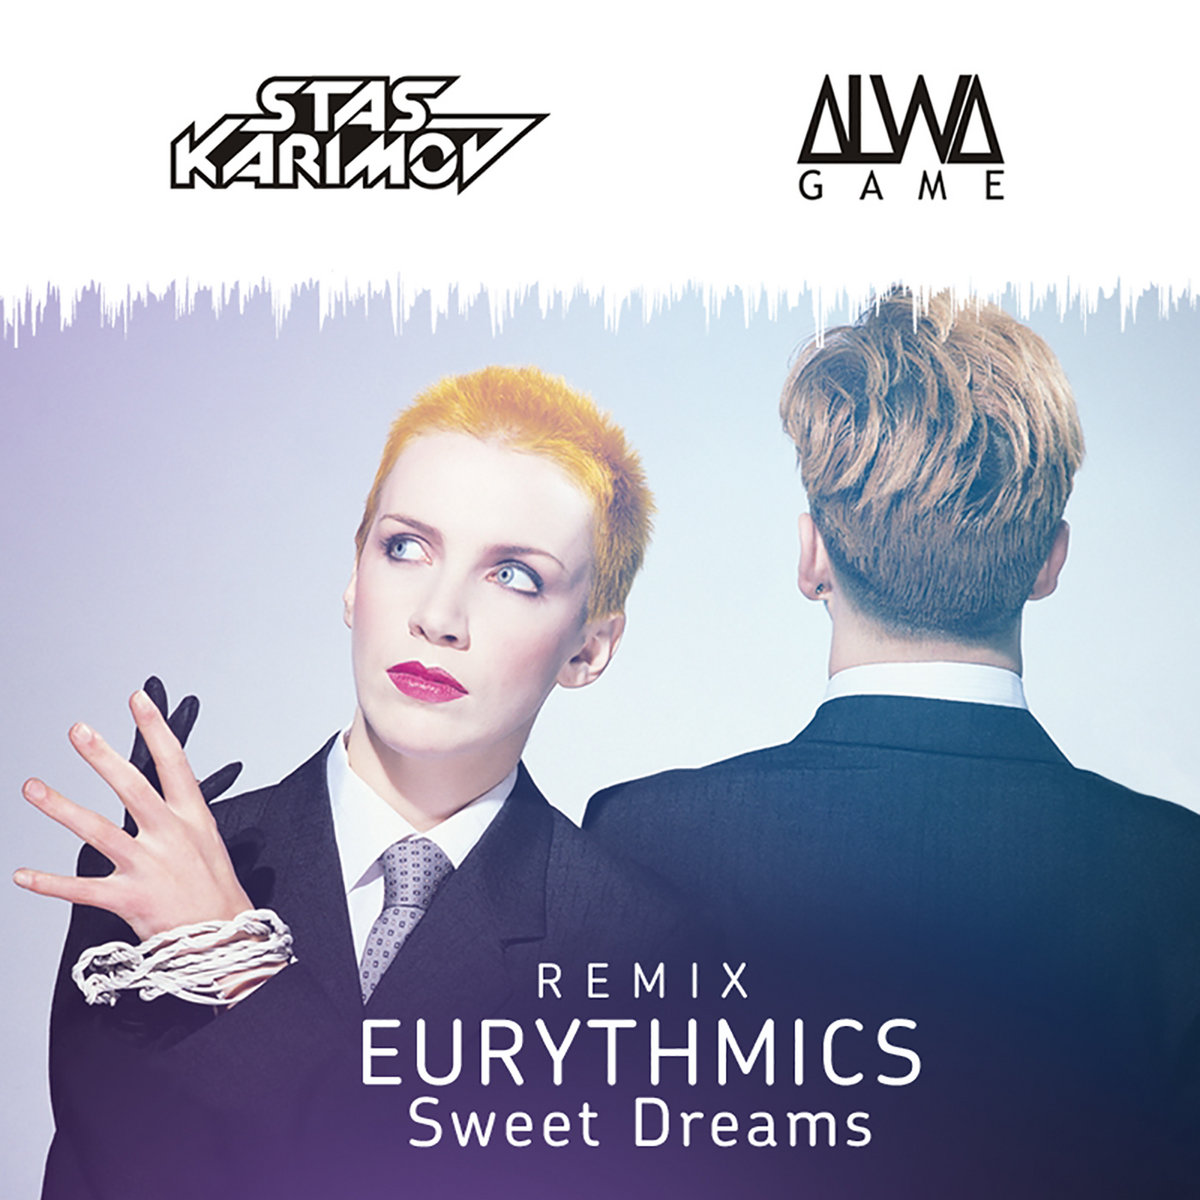 Eurythmics - Sweet Dreams (DJ KARIMOV & ALWA GAME REMIX) | DJ KARIMOV